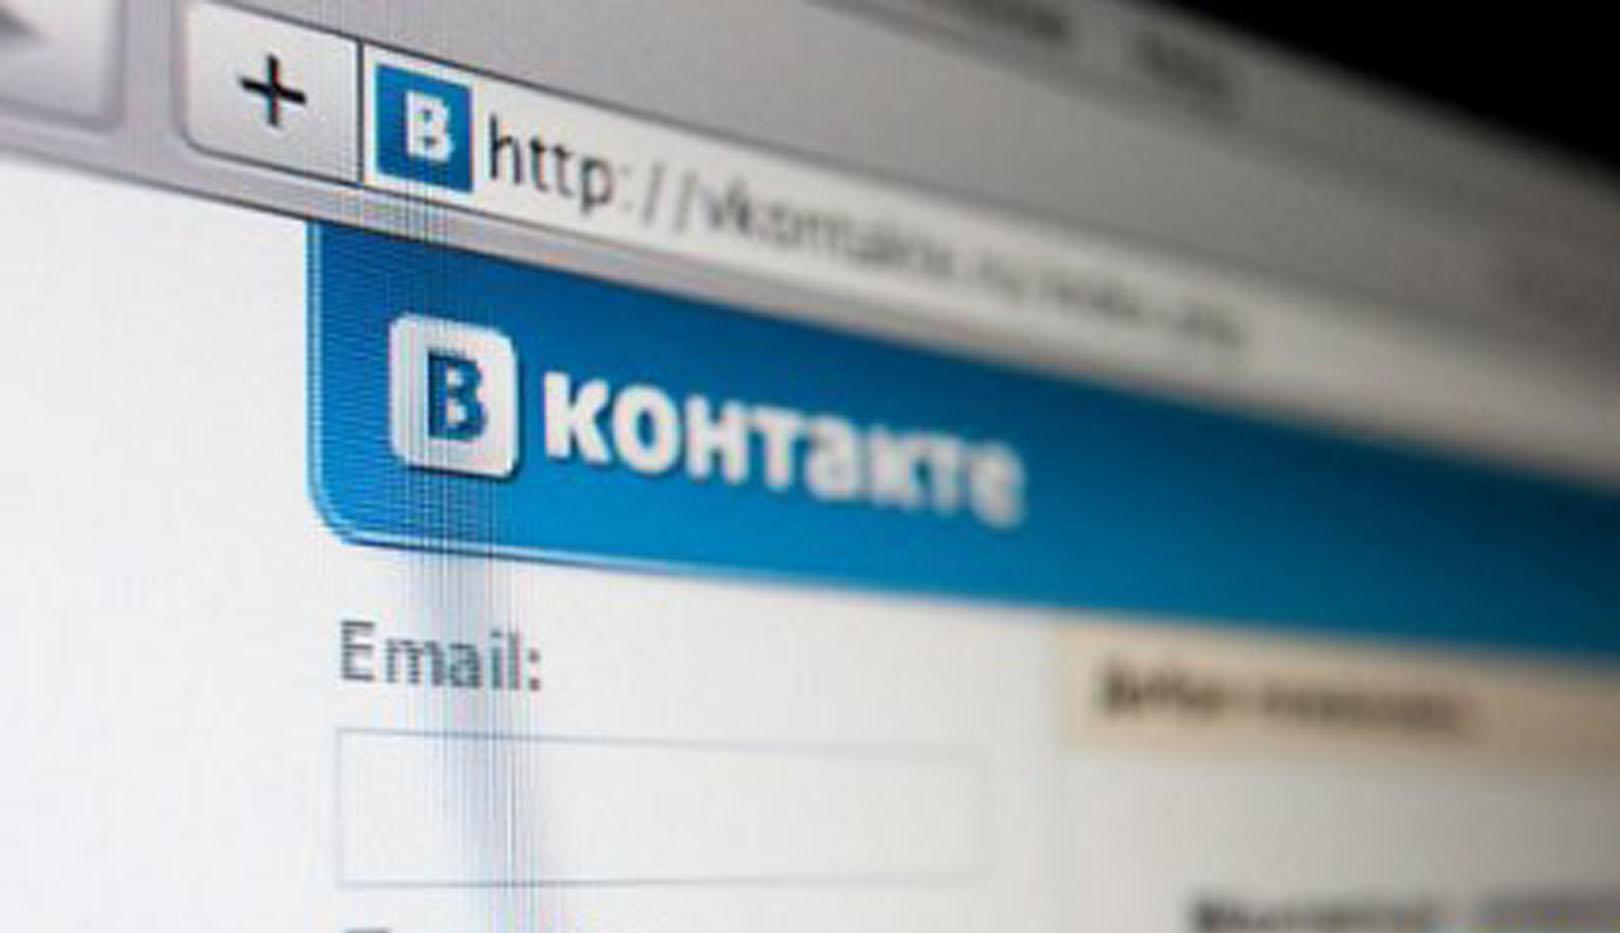 Любители "олдскульного" оформления "ВКонтакте" могут заменить новый дизайн